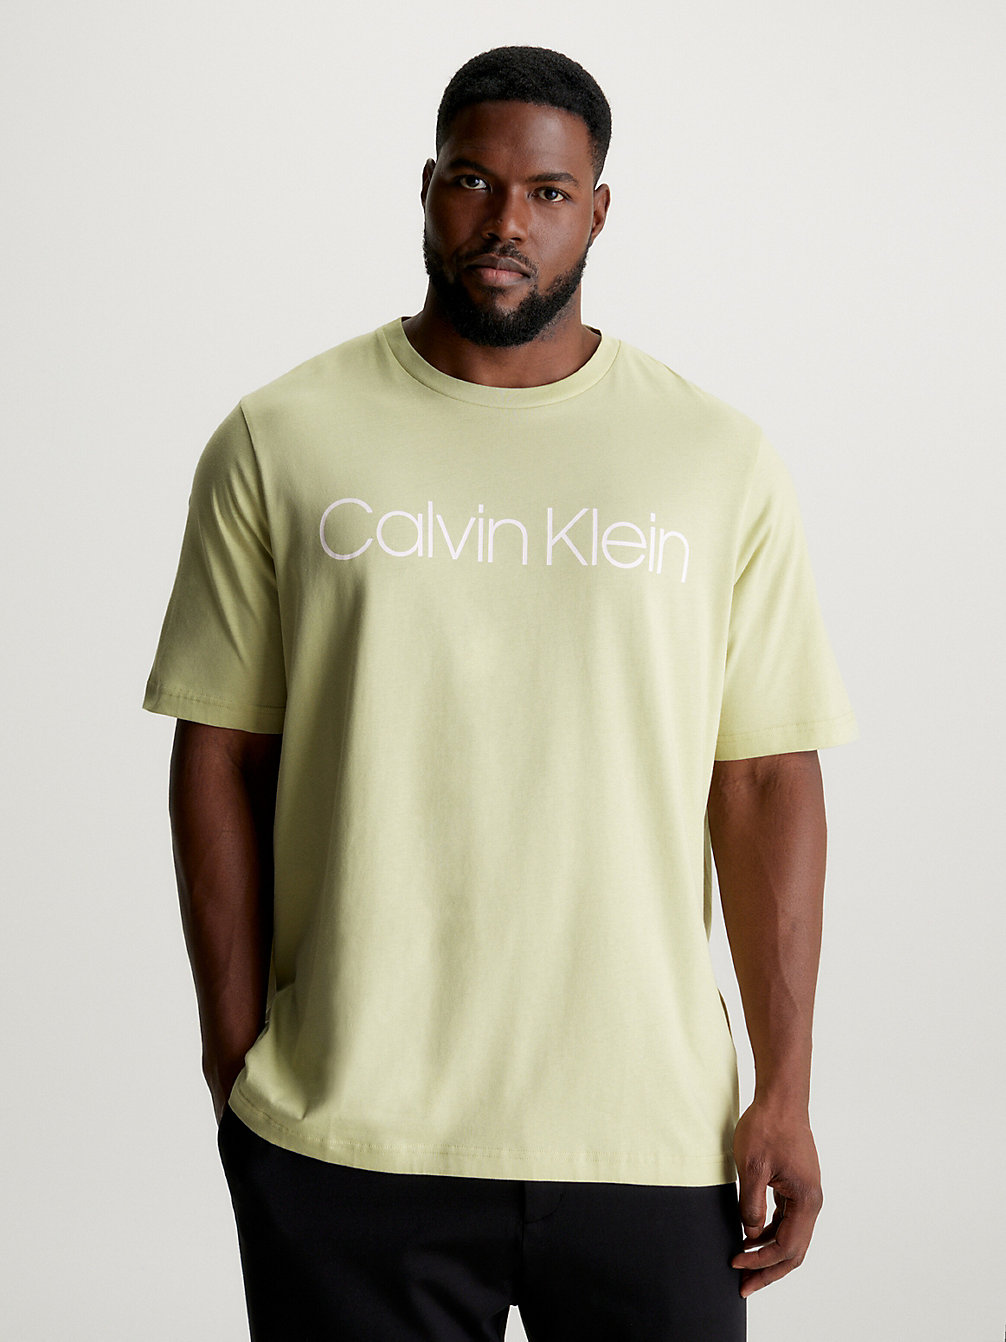 T-Shirt Grande Taille En Coton Bio > HERB TEA > undefined hommes > Calvin Klein